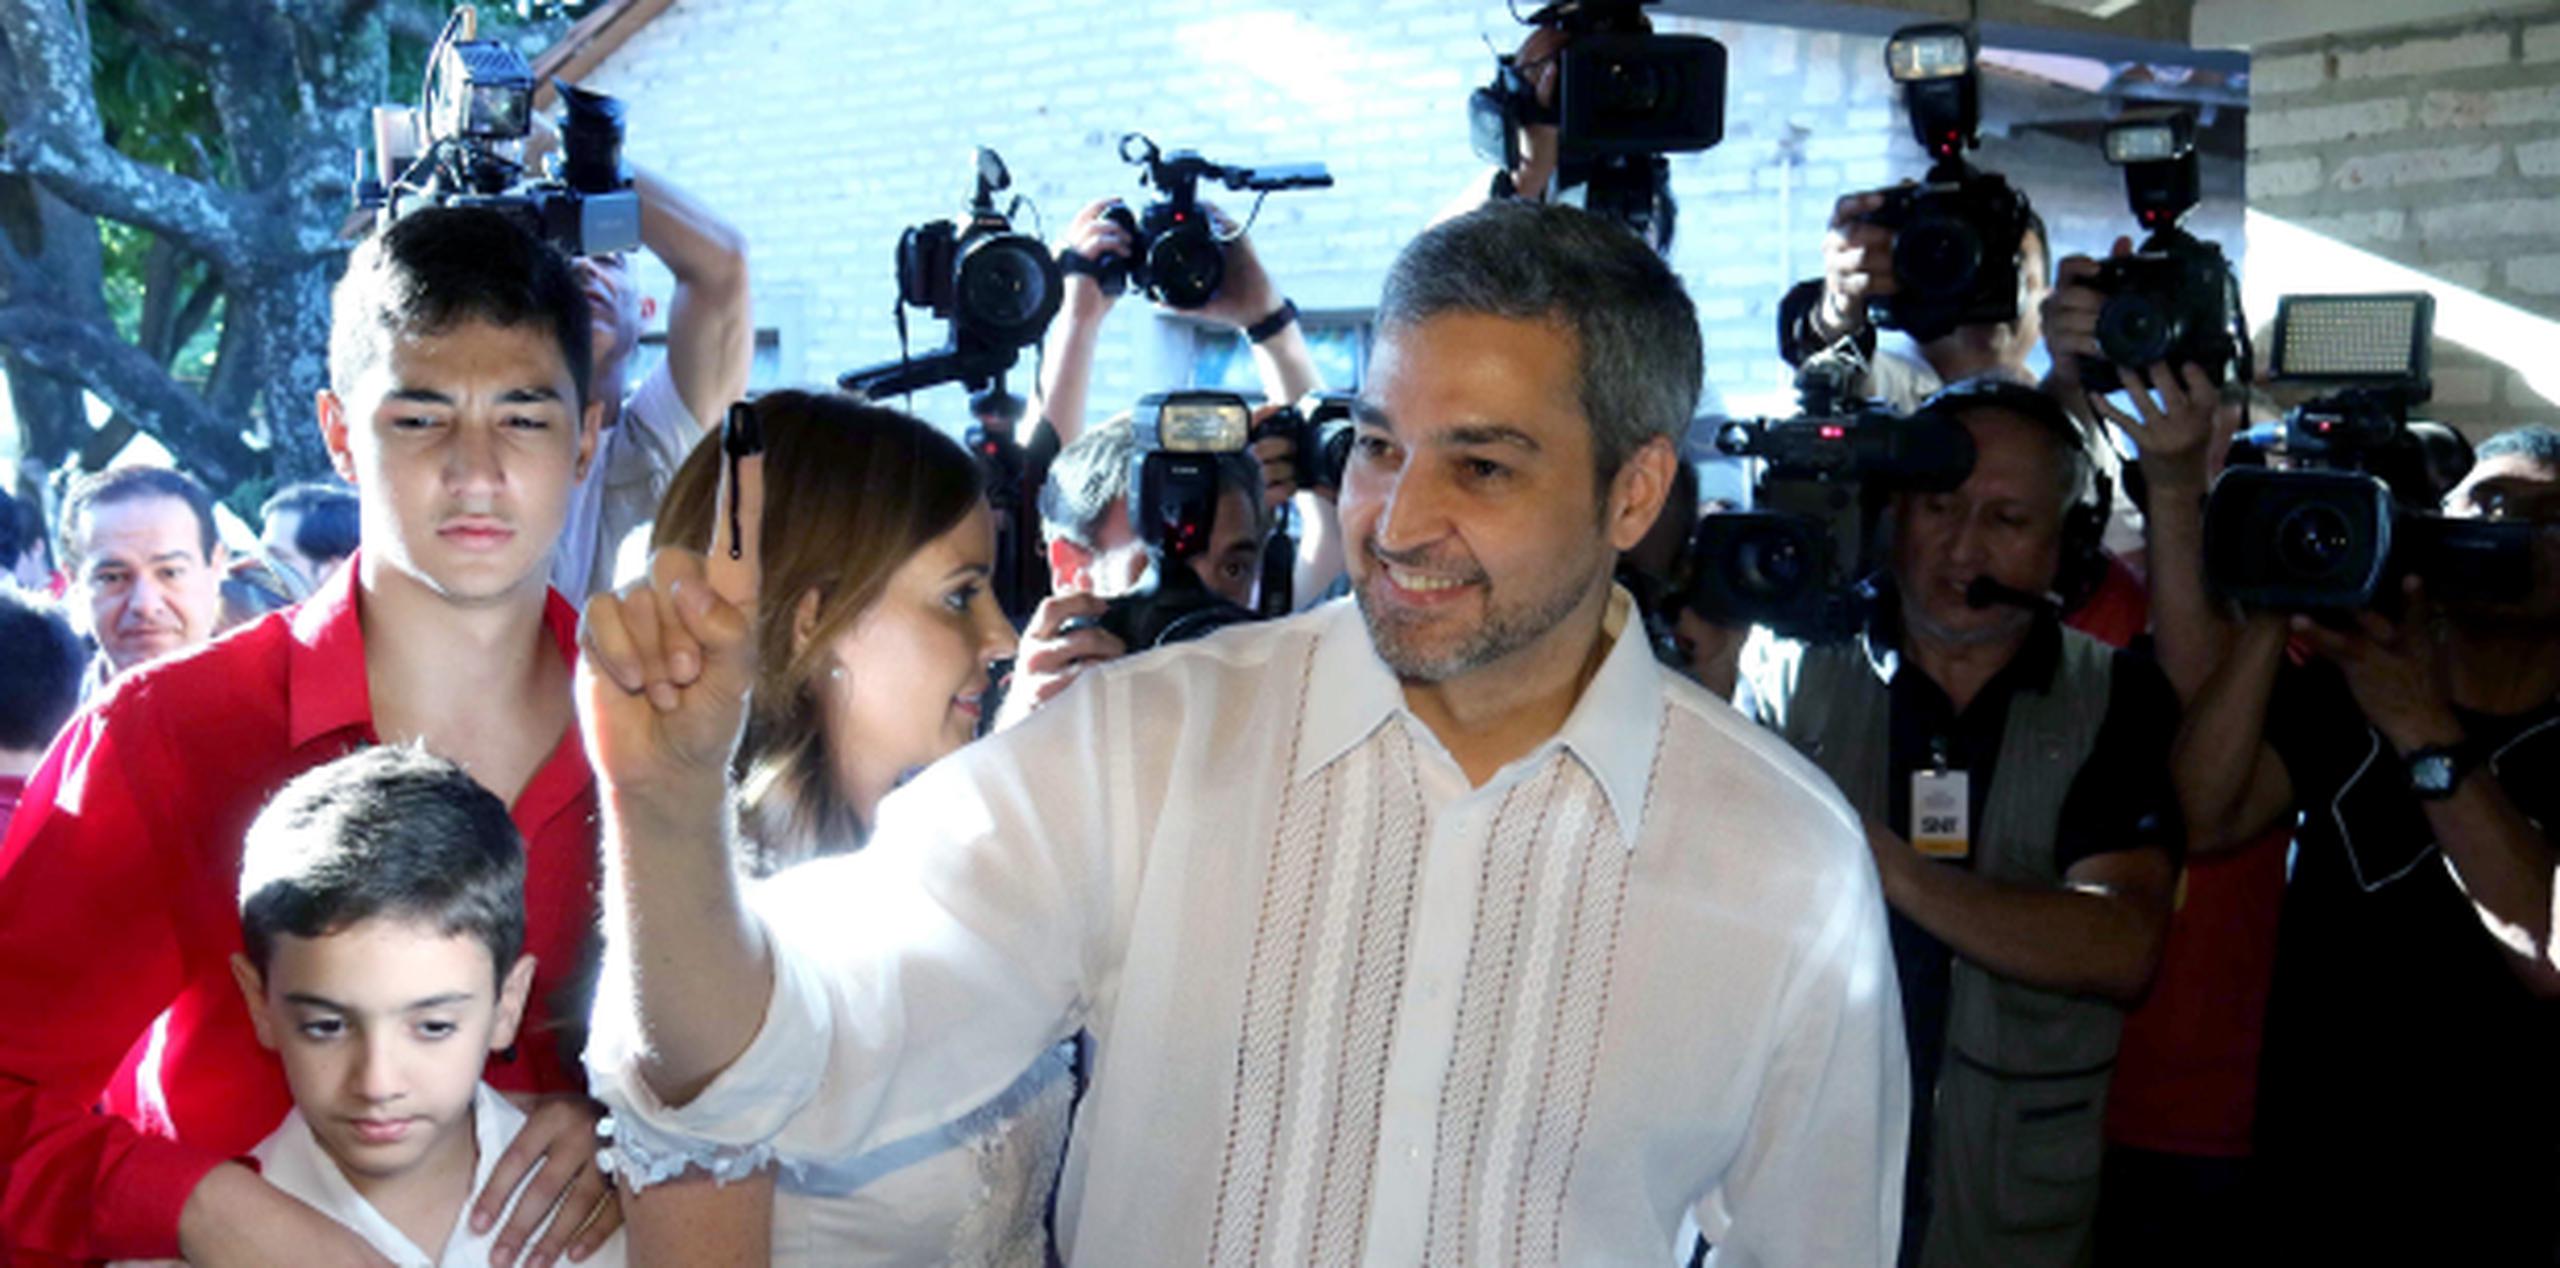 El oficialista Mario Abdo Benítez gana la presidencia de Paraguay. (AP)

